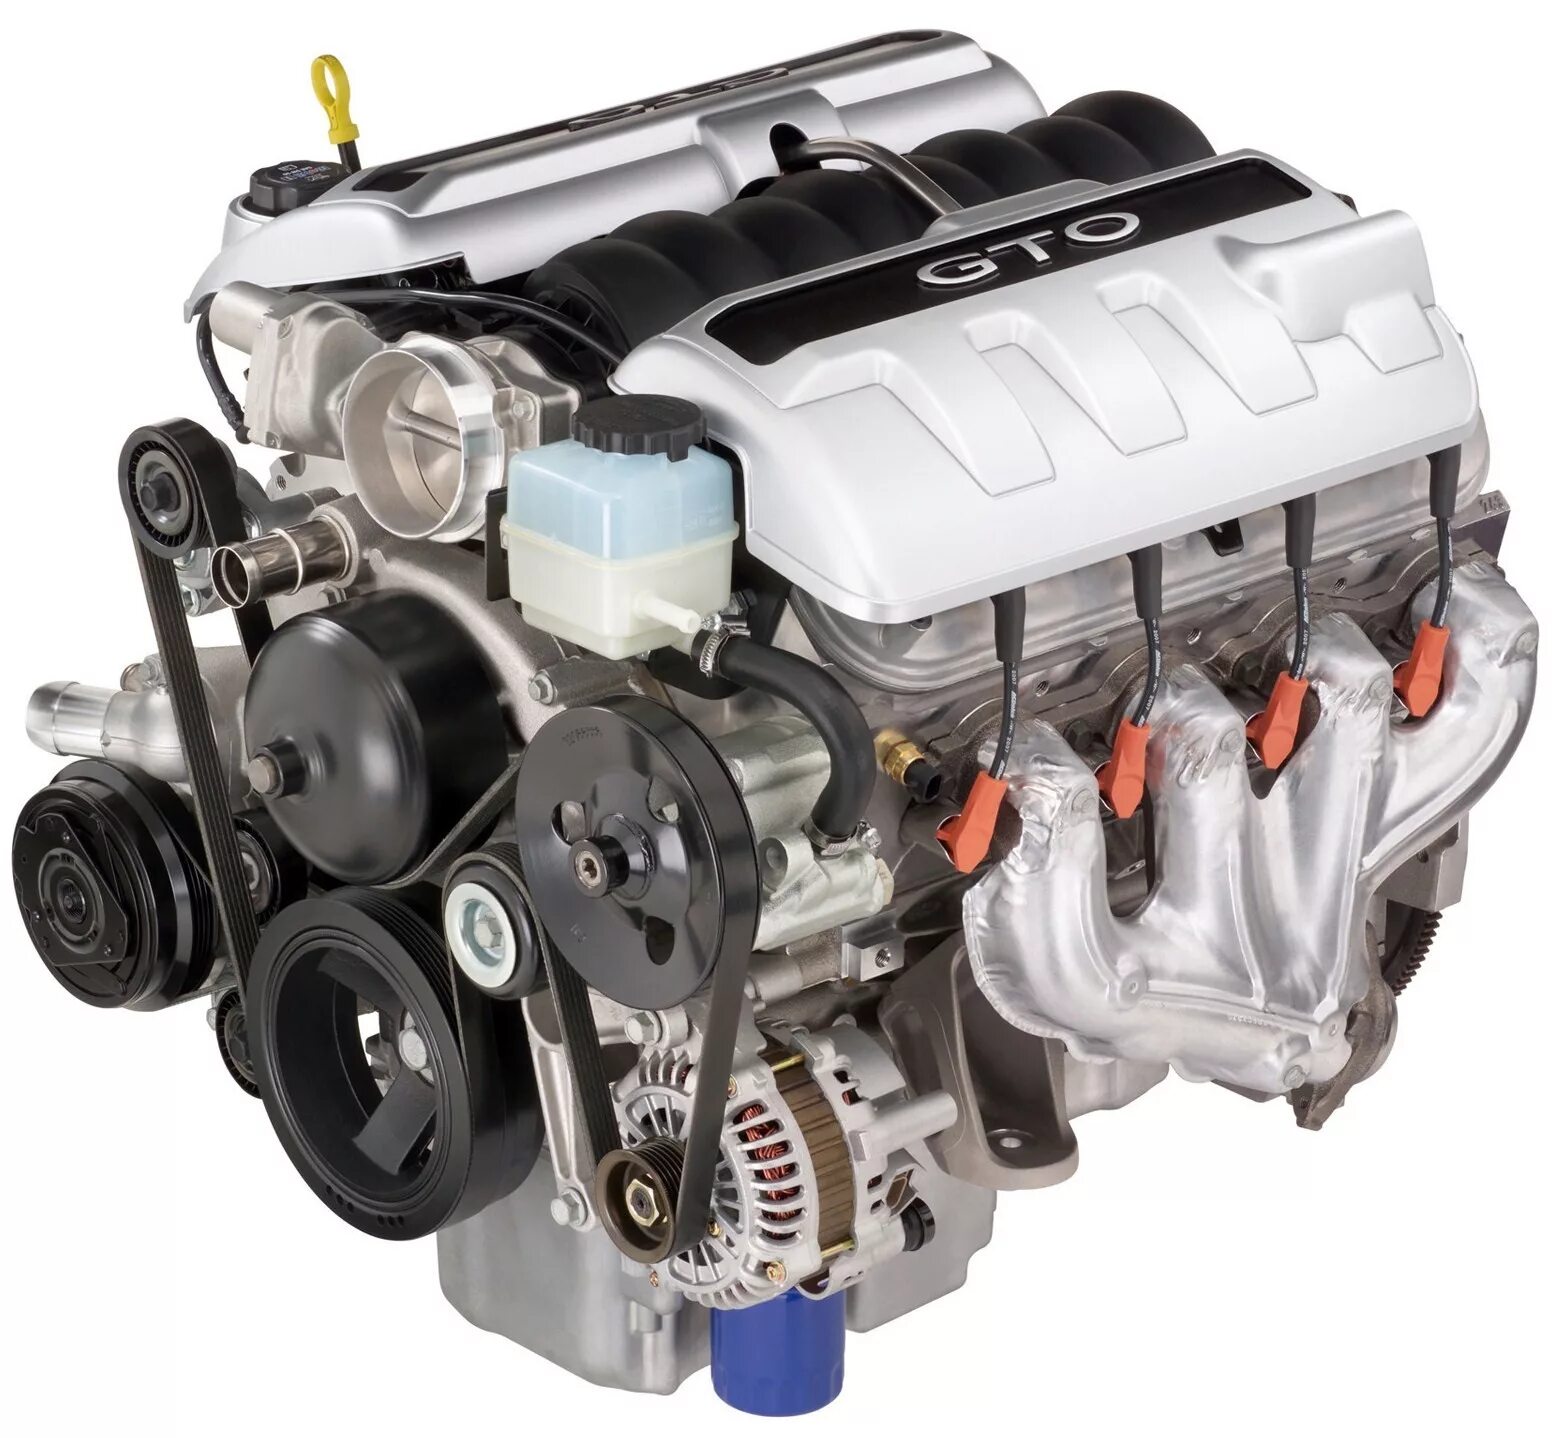 Мотор шеви. Chevrolet ls2 двигатель. Двигатель GM Chevrolet l98. Chevrolet 6,2 движок. Chevrolet ls2 engine.